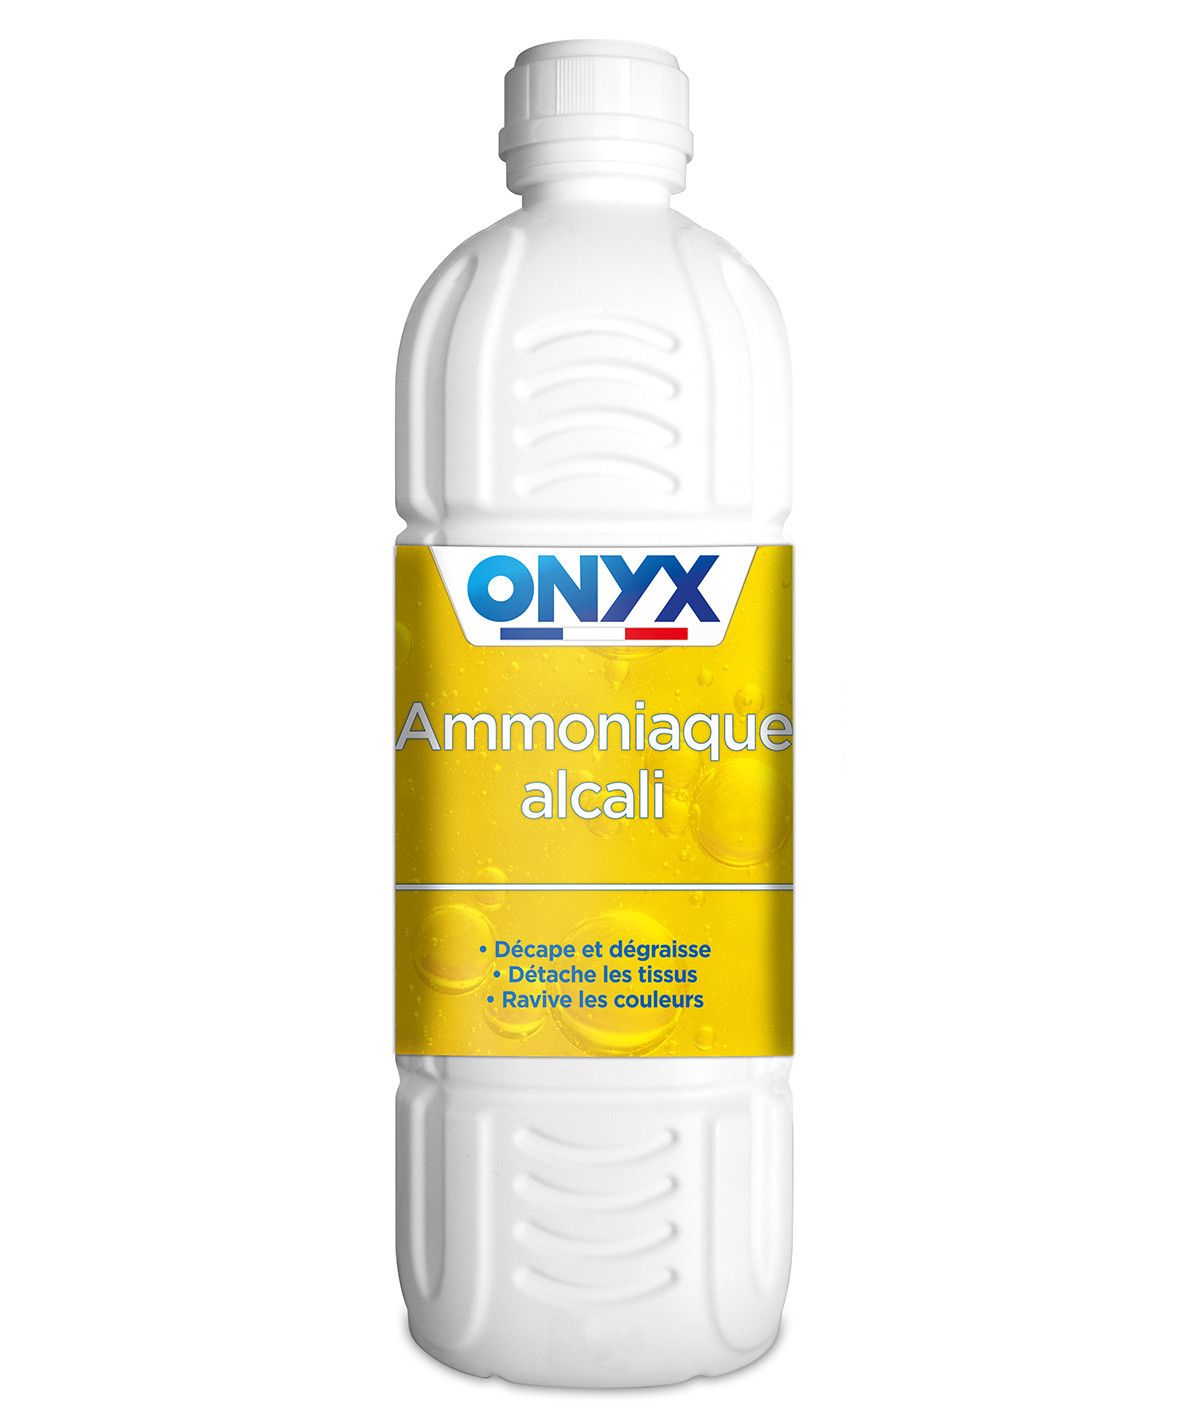 Ammoniaque pour décaper, dégraisser et détacher : Onyx (1 L)